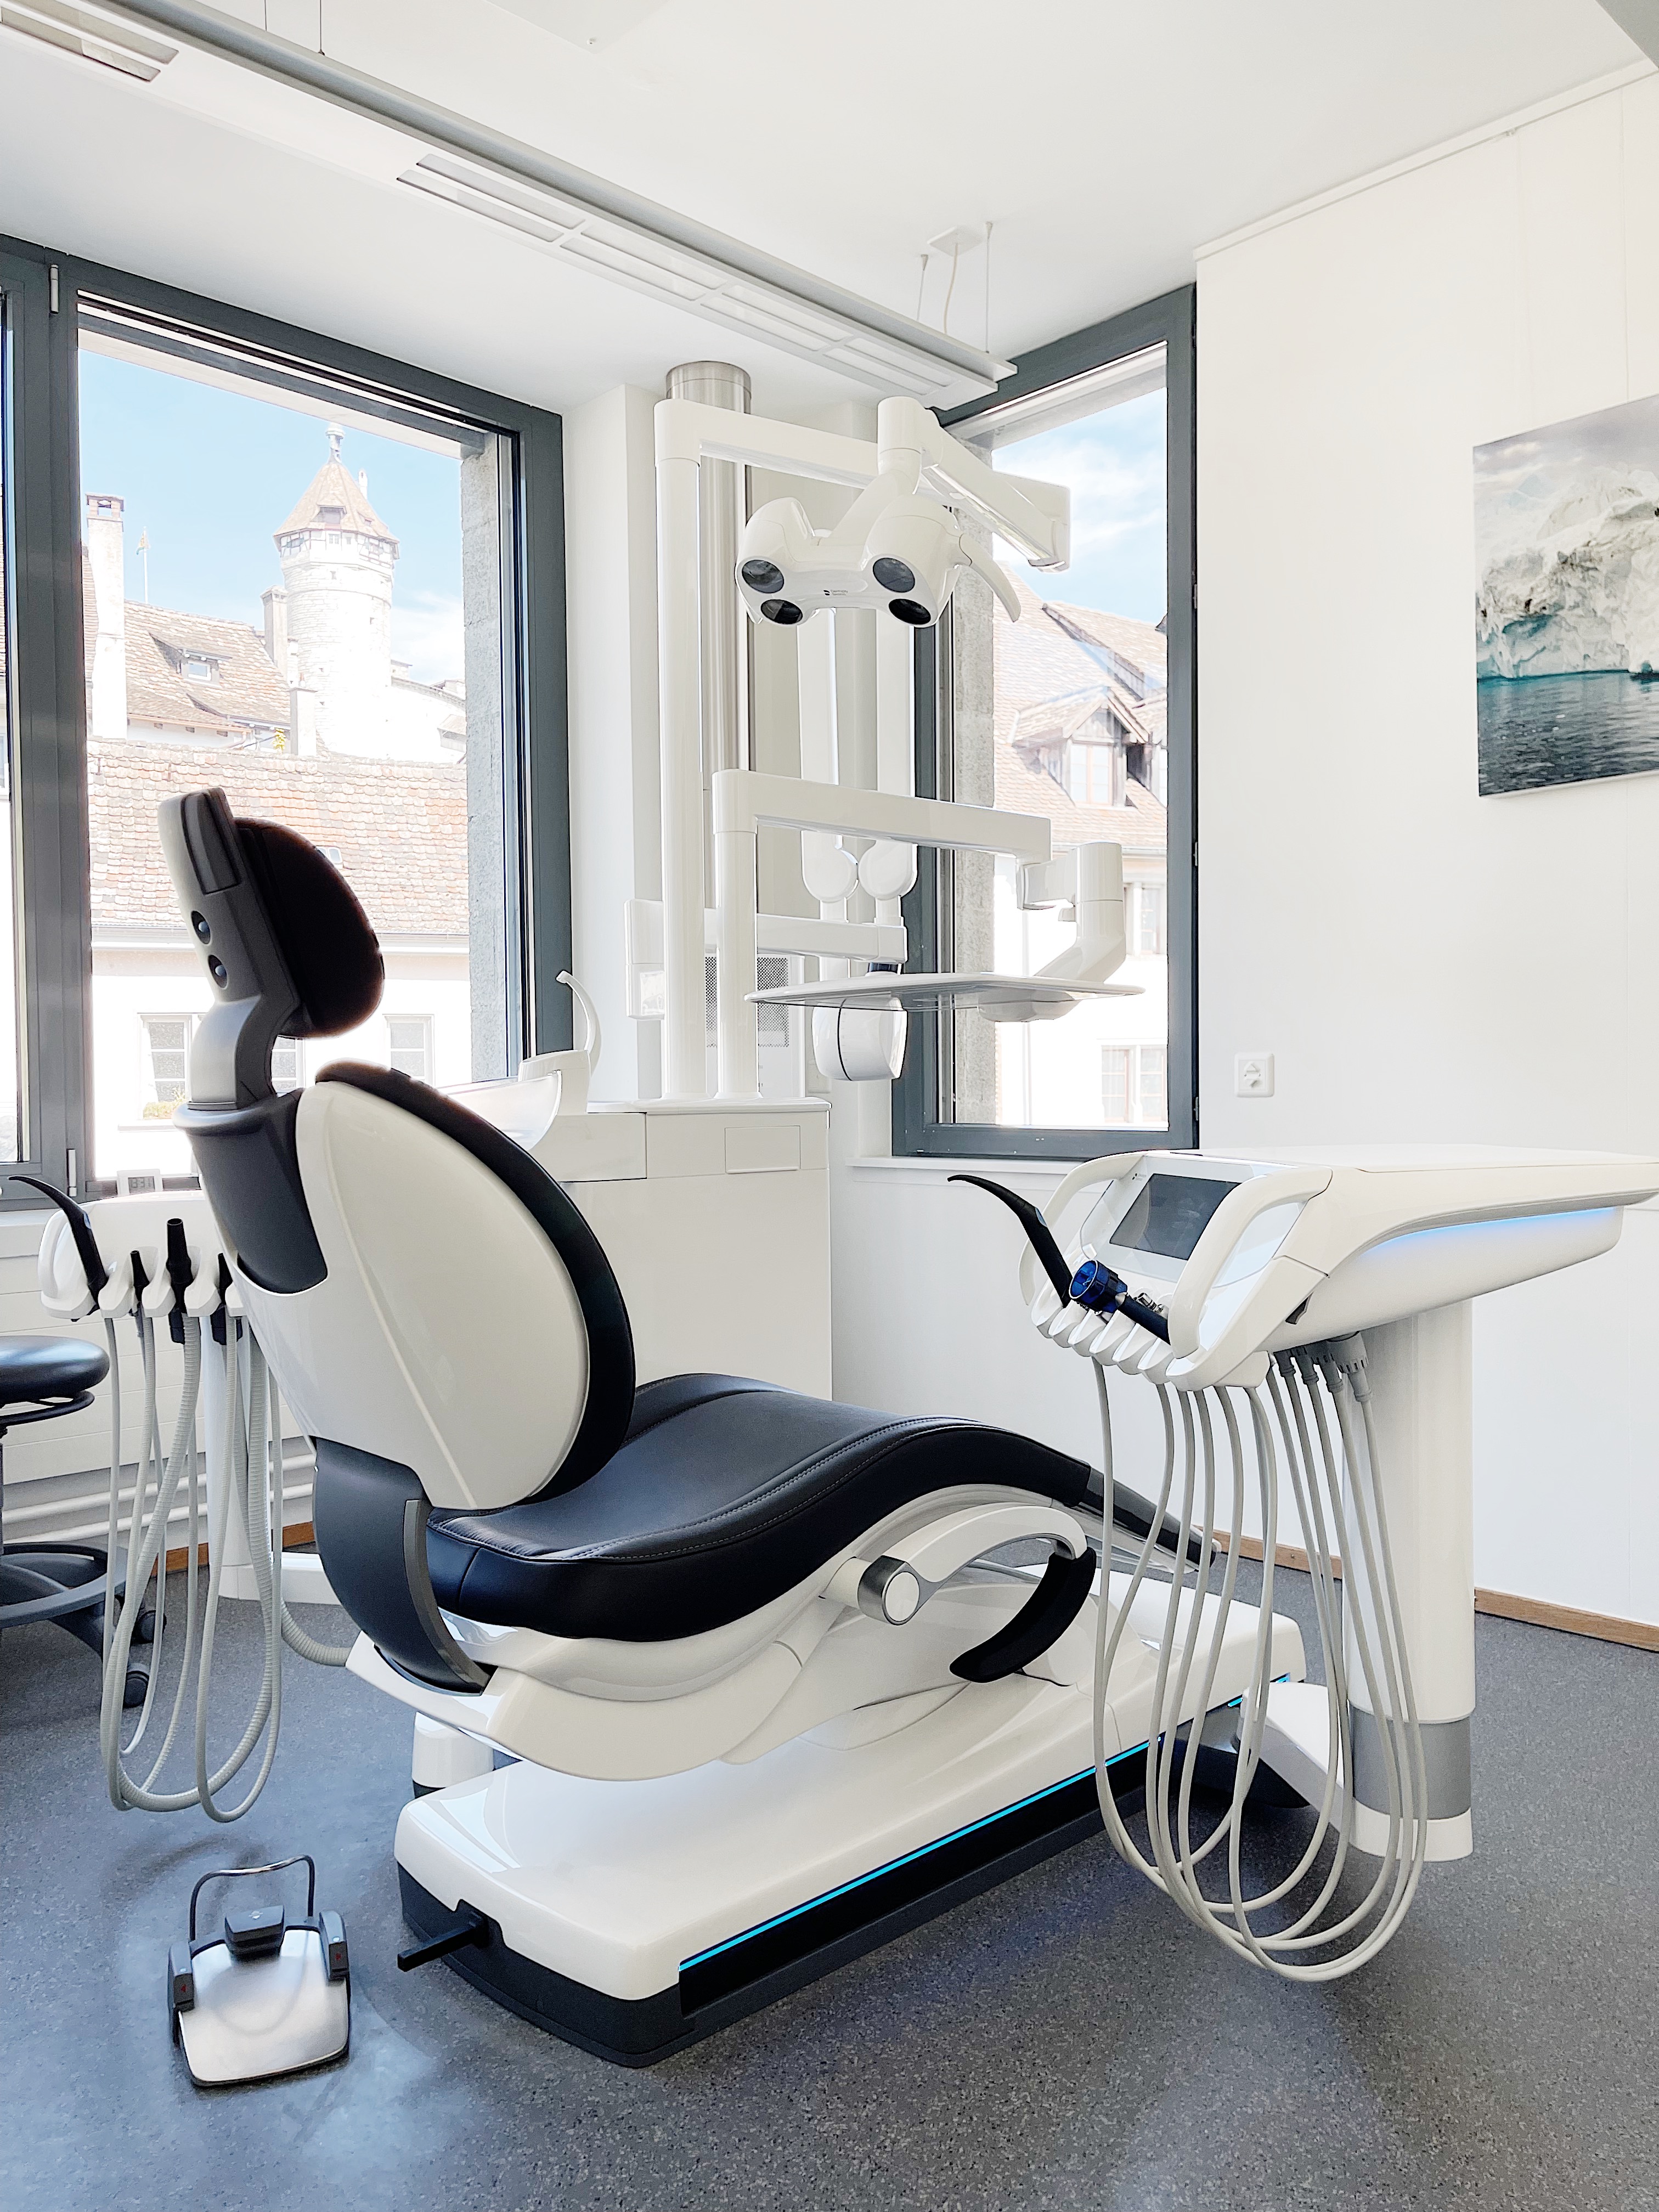 Erneuerungen in der Zahnarztpraxis...